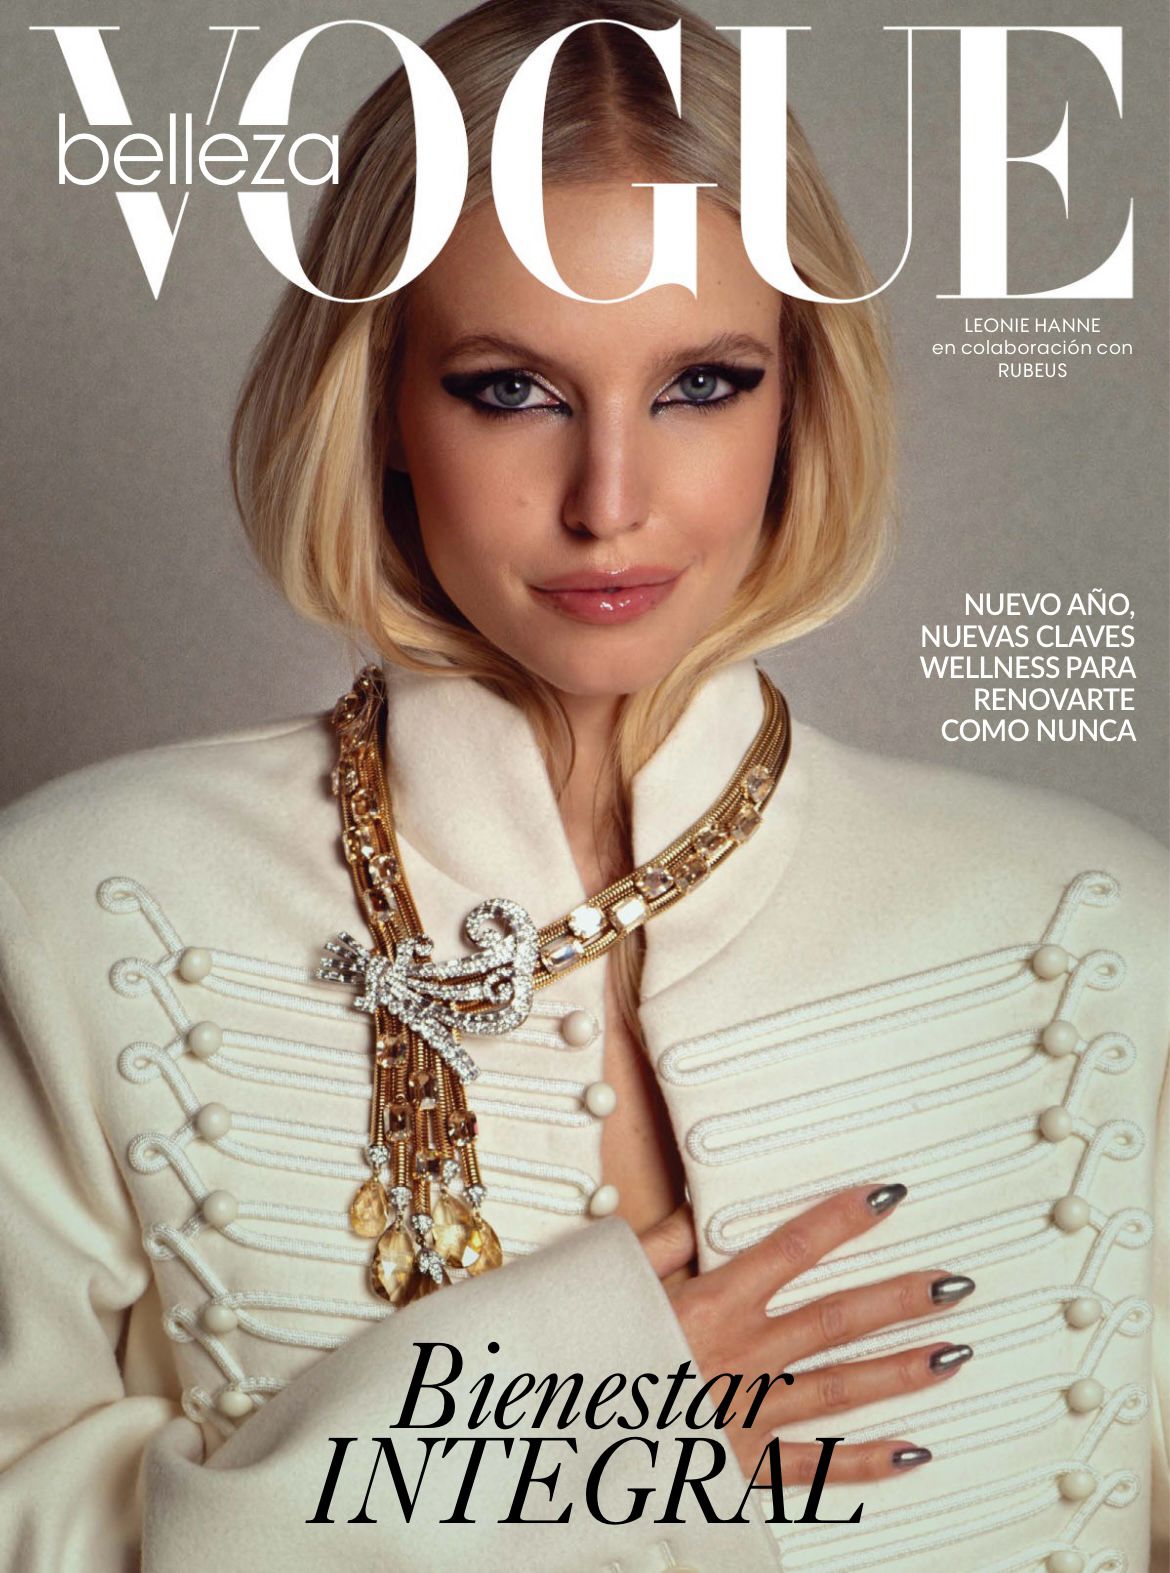 Artículo en Revista Vogue - Jaspe